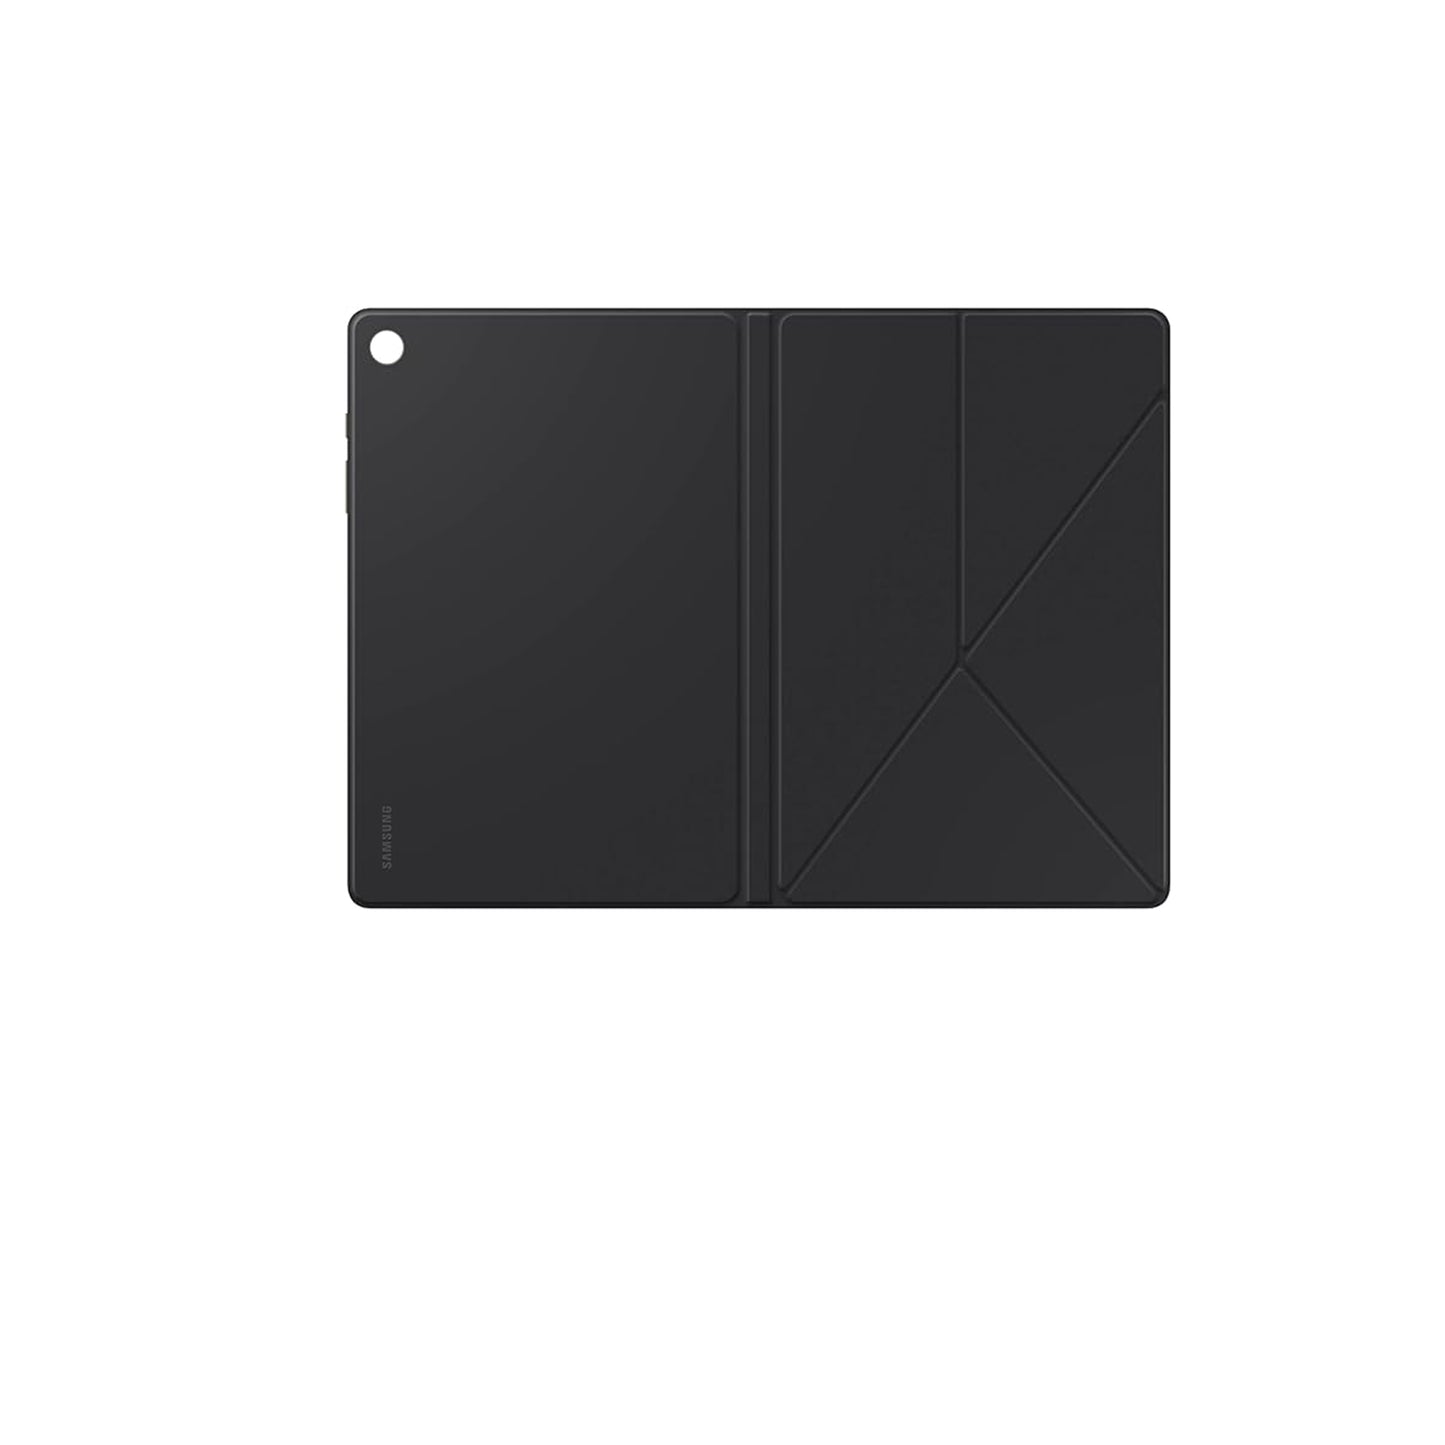 غطاء كتاب SAMSUNG Galaxy Tab A9+، حافظة حماية للكمبيوتر اللوحي، حامل قابل للطي مع أوضاع أفقية وصورة، حماية ضد الصدمات والخدوش، تشغيل/إيقاف الشاشة تلقائيًا، الإصدار الأمريكي، أسود - كاكي 